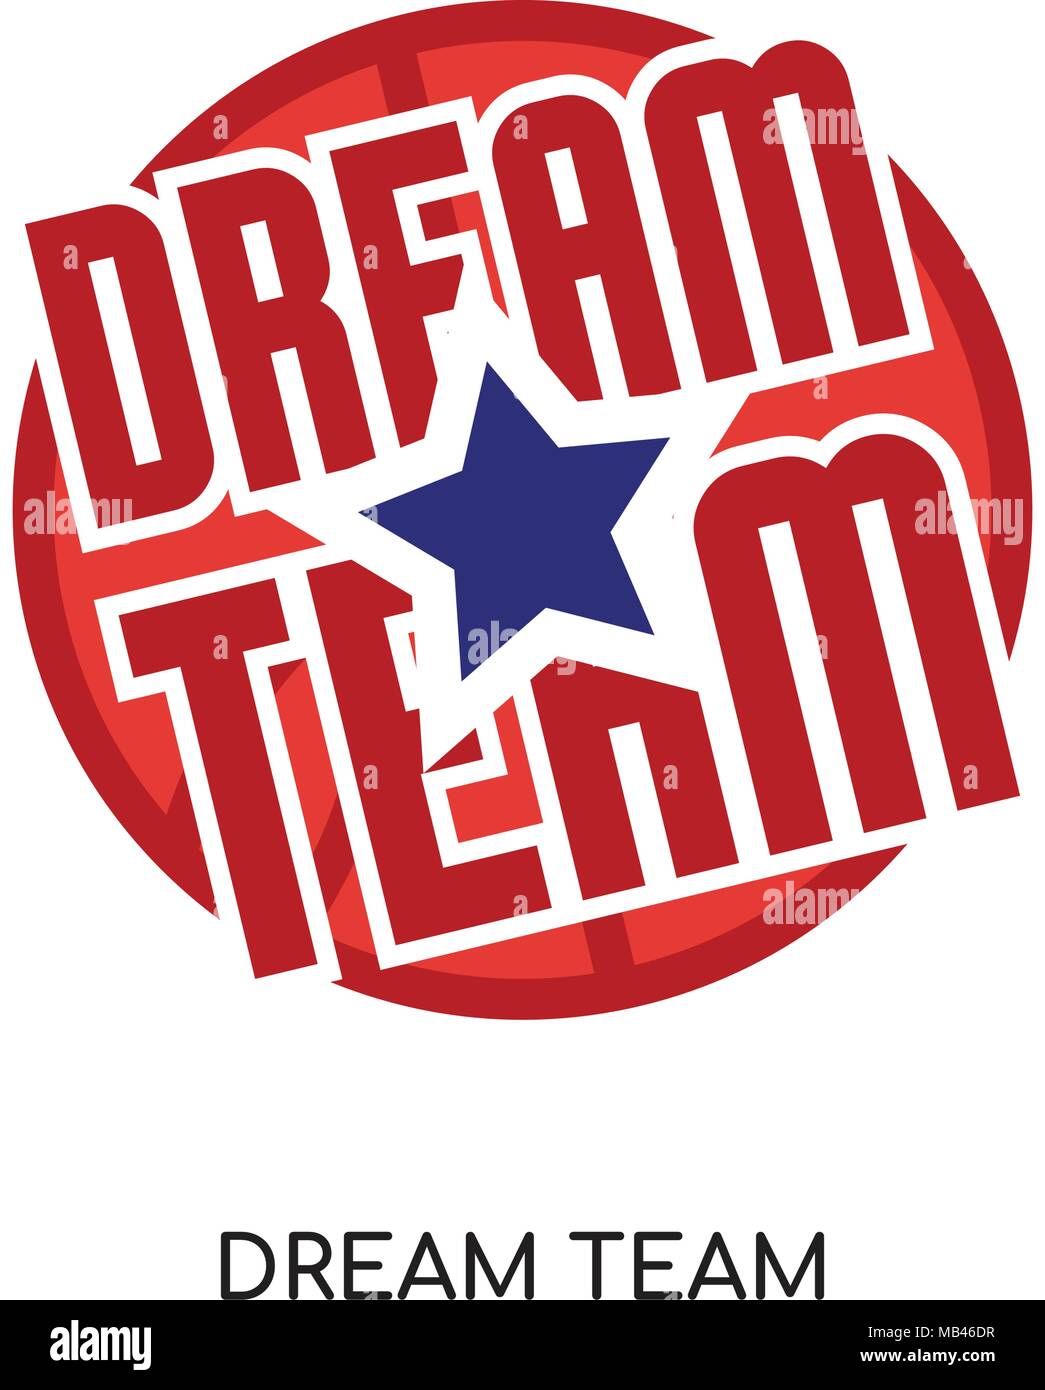 Download Dream Team logo aislado sobre fondo blanco para tu web ...